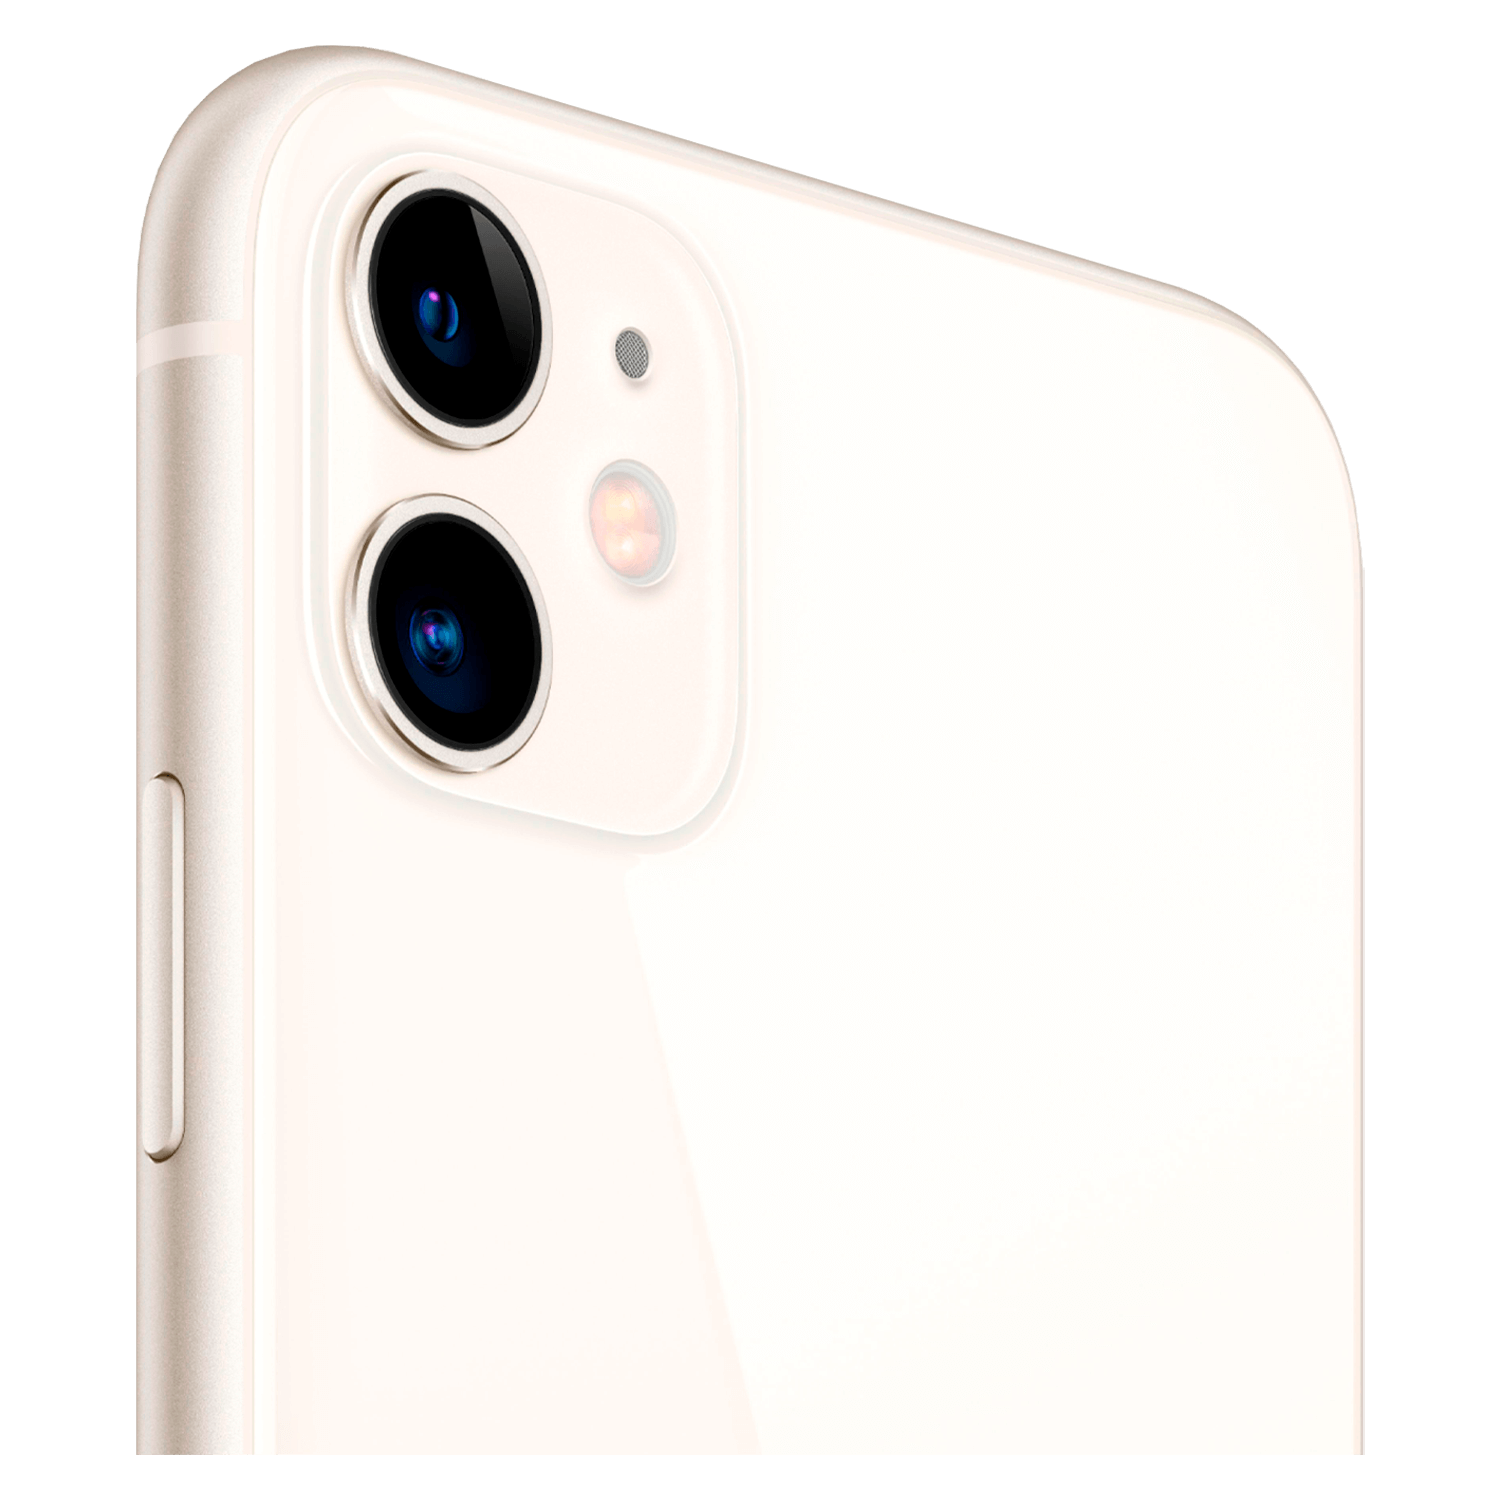 Celular Apple iPhone 11 128GB A2111 RM / 4G LTE / Tela 6.1" / Câmeras de 12MP + 12MP e 12MP - Branco (Caixa Slim)